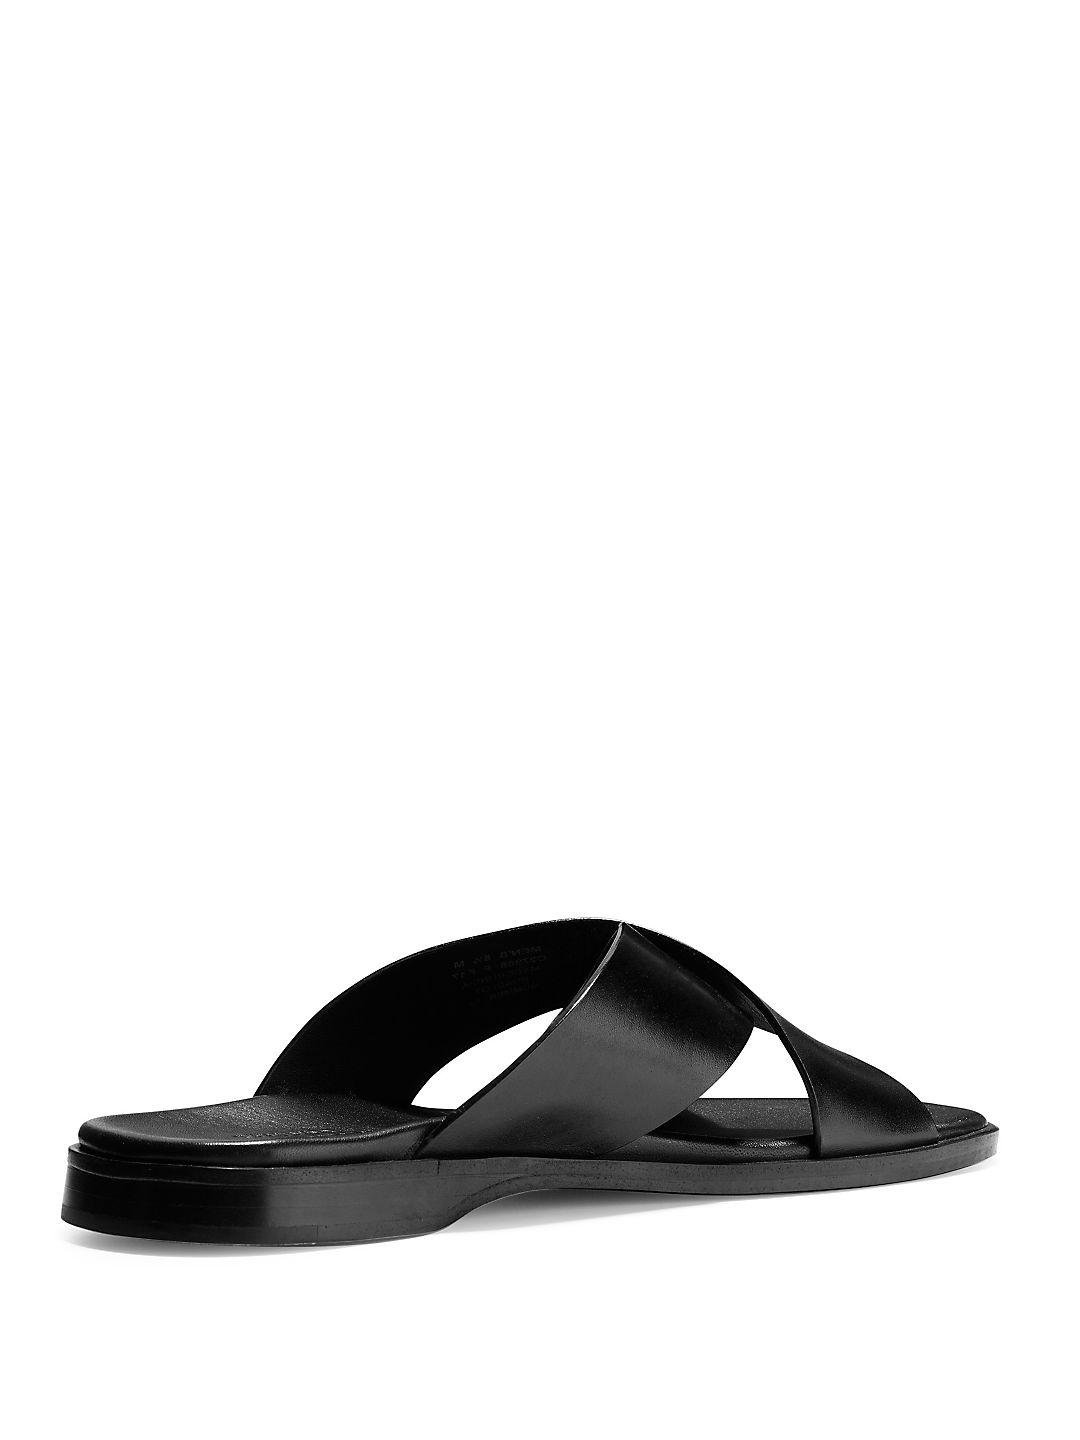 Cole Haan Goldwyn Leather Criss Cross Sandals in Black for Men - Lyst